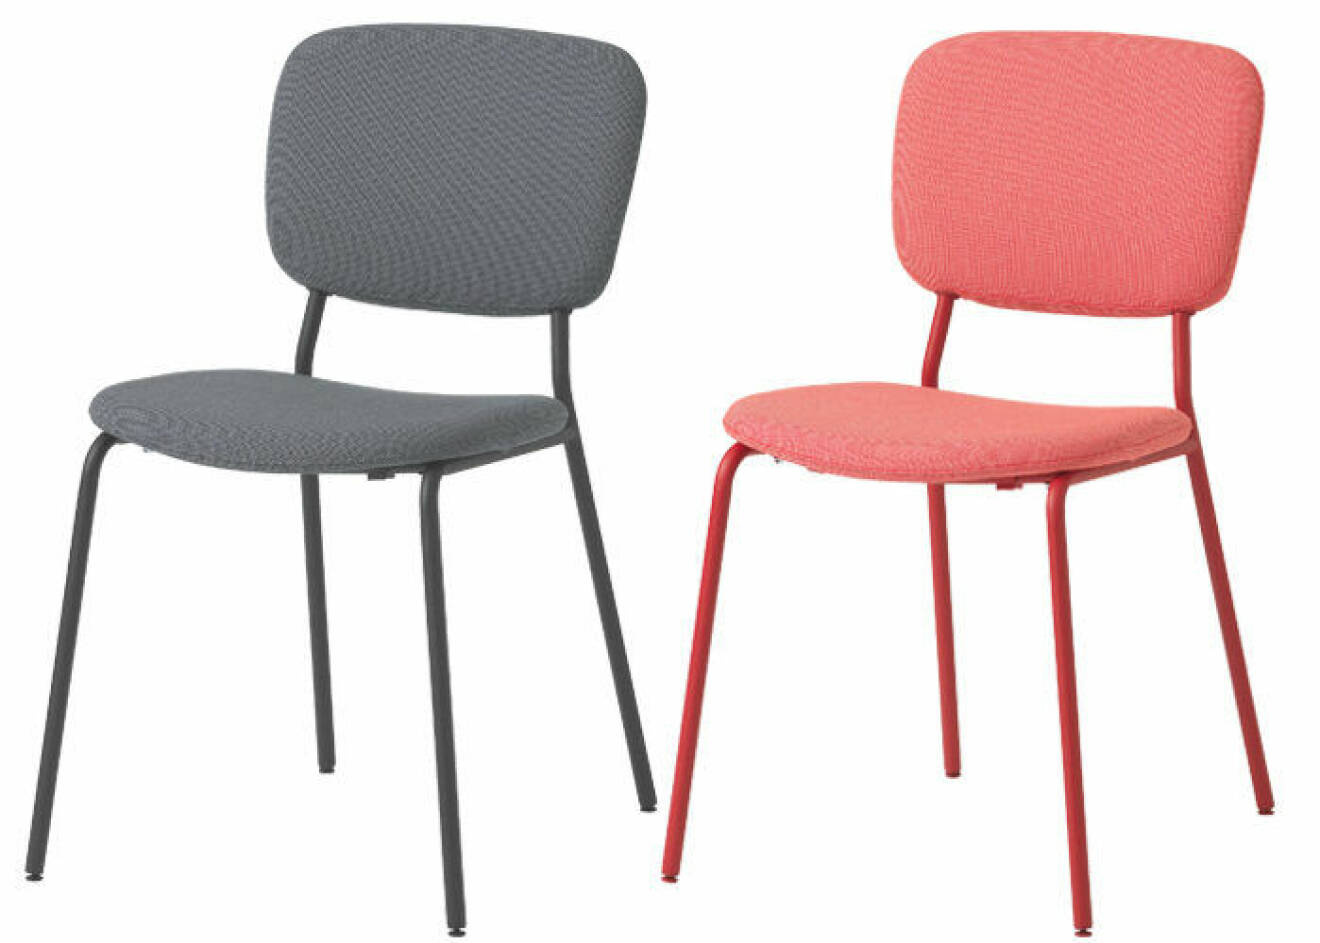 Karljan stol i grått och rött från Ikea